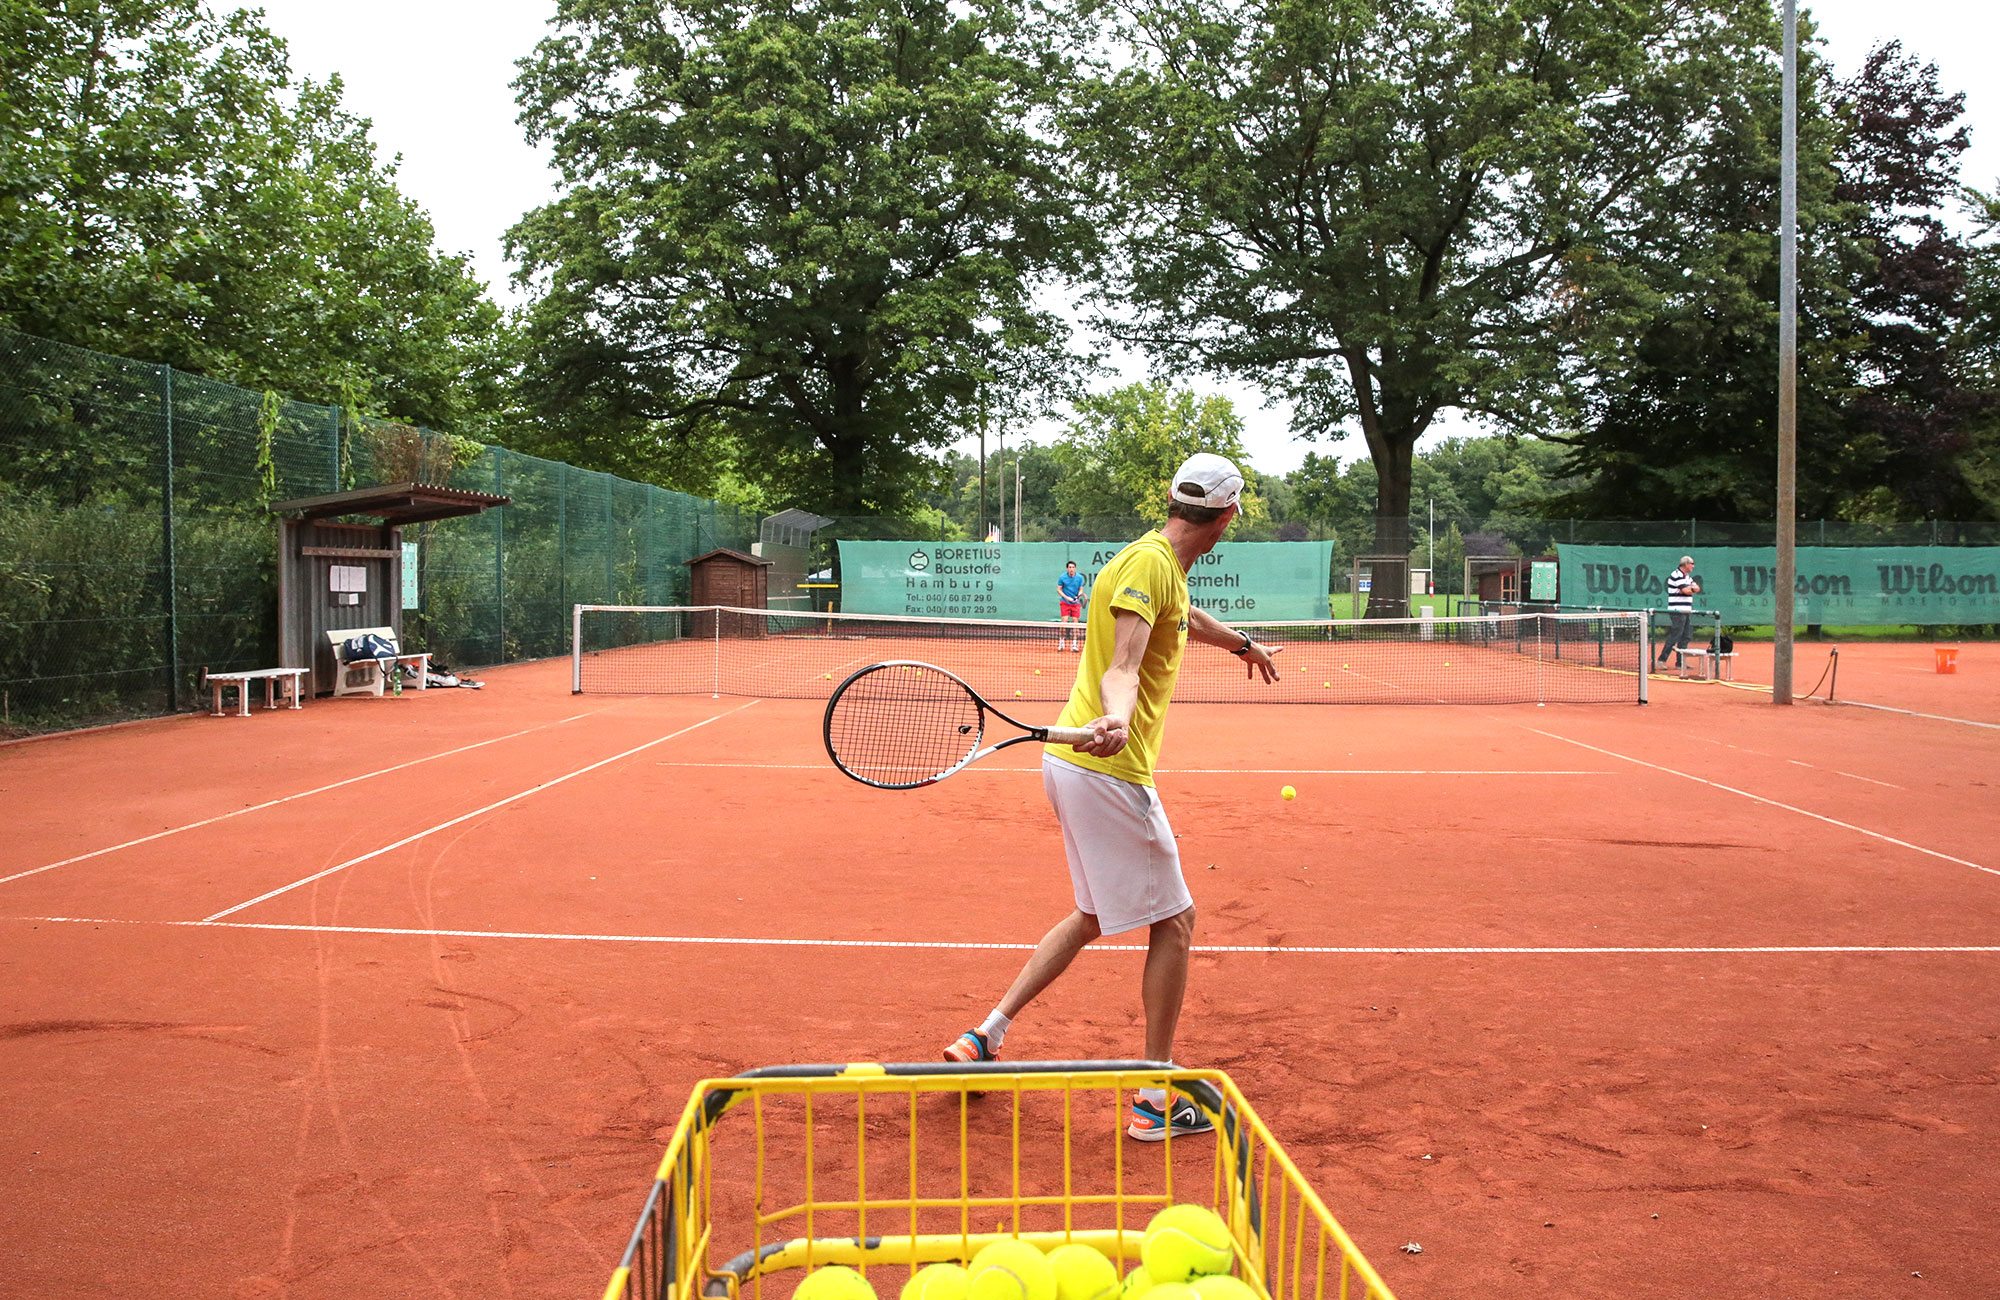 Horn Hamm Tennis